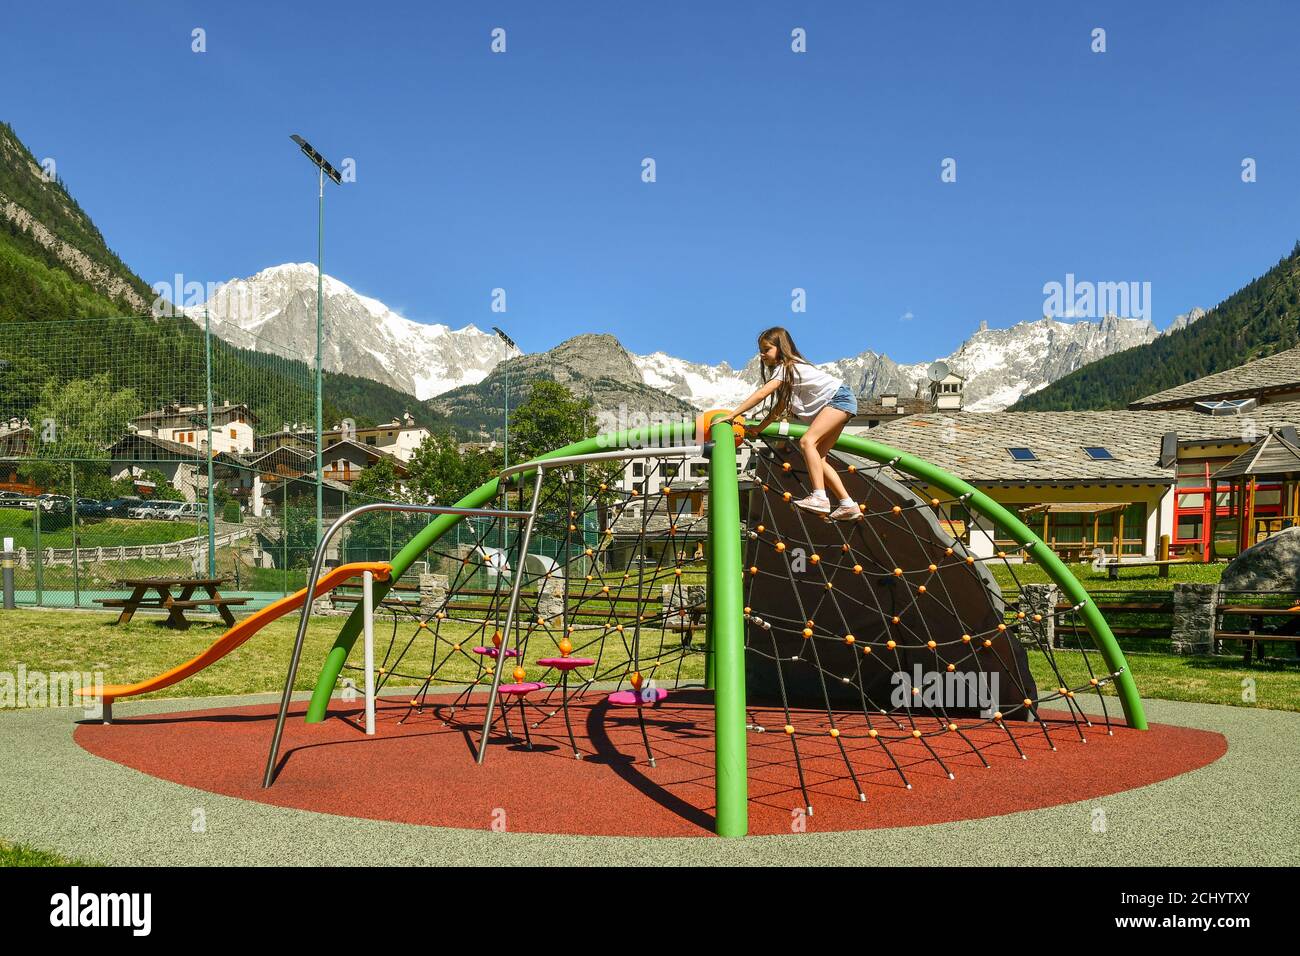 Bambina (10 anni) che arrampica una struttura di gioco in un parco giochi del villaggio alpino ai piedi del massiccio del Monte Bianco, Pré-Saint-Didier, Aosta, Italia Foto Stock